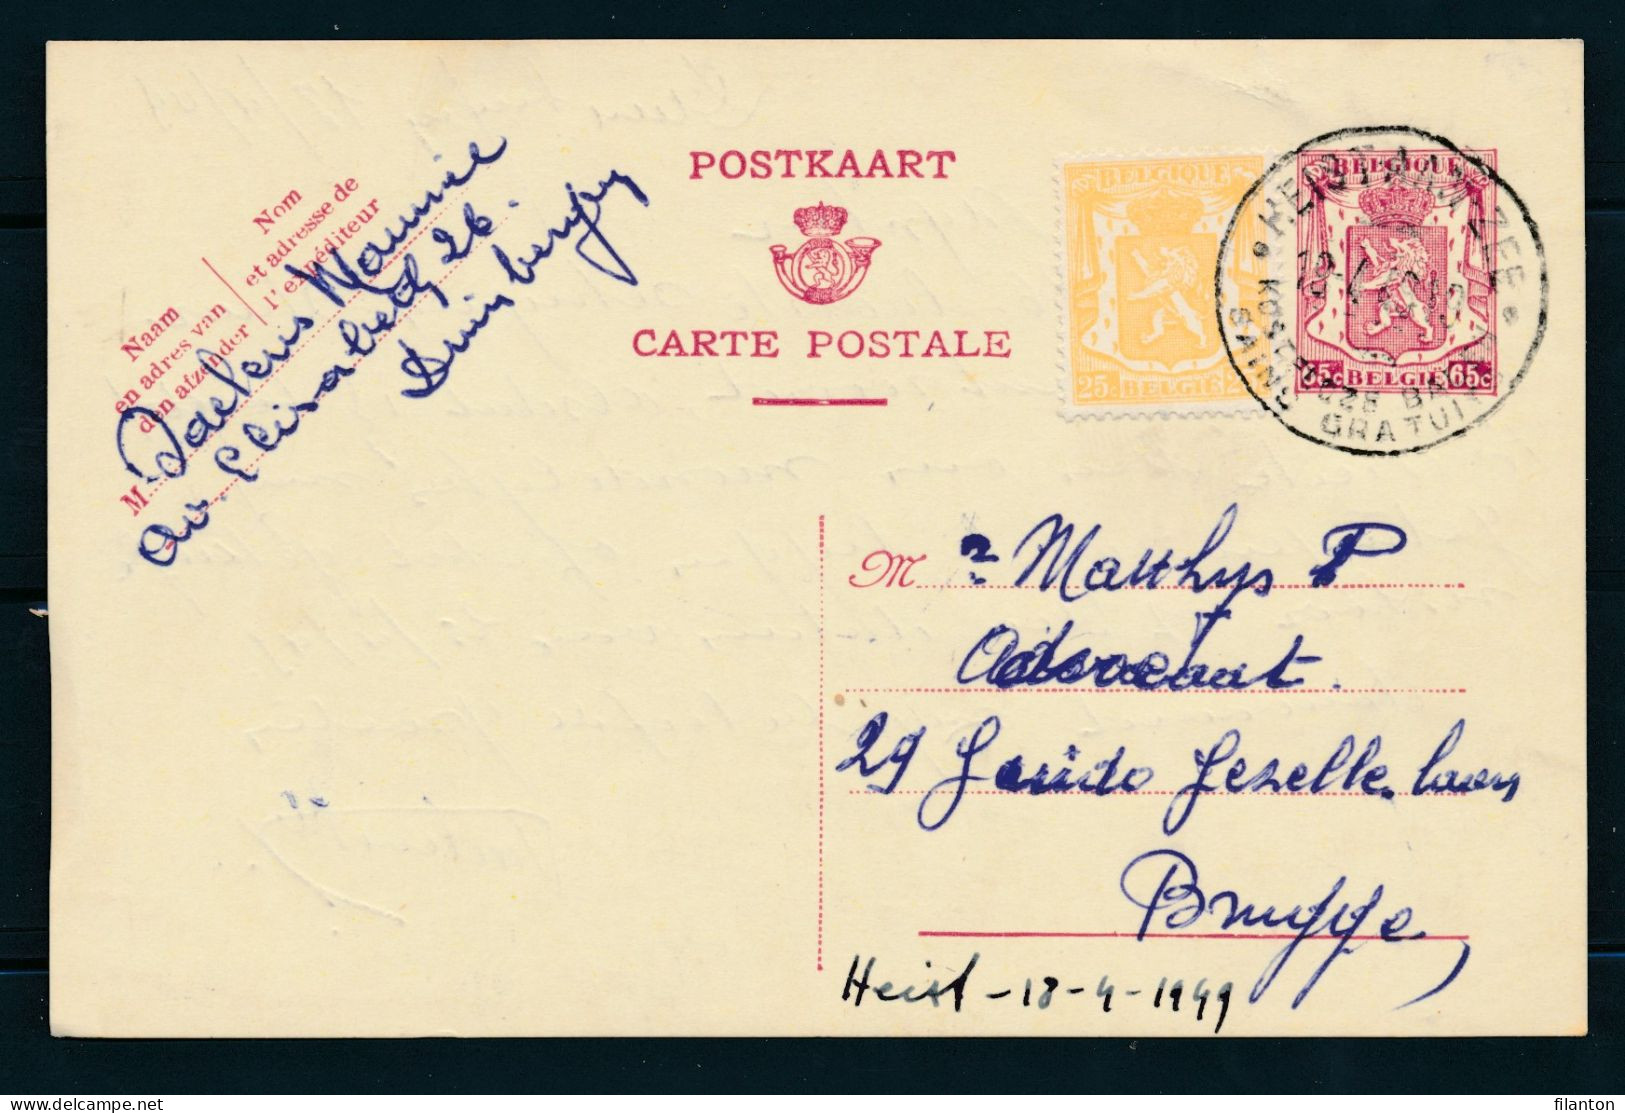 PWS - Cachet "HEIST-AAN-ZEE - KOSTELOZE BADEN - BAINS GRATUITES" Dd. 18-04-1949 - (ref.1729) - Postcards 1934-1951